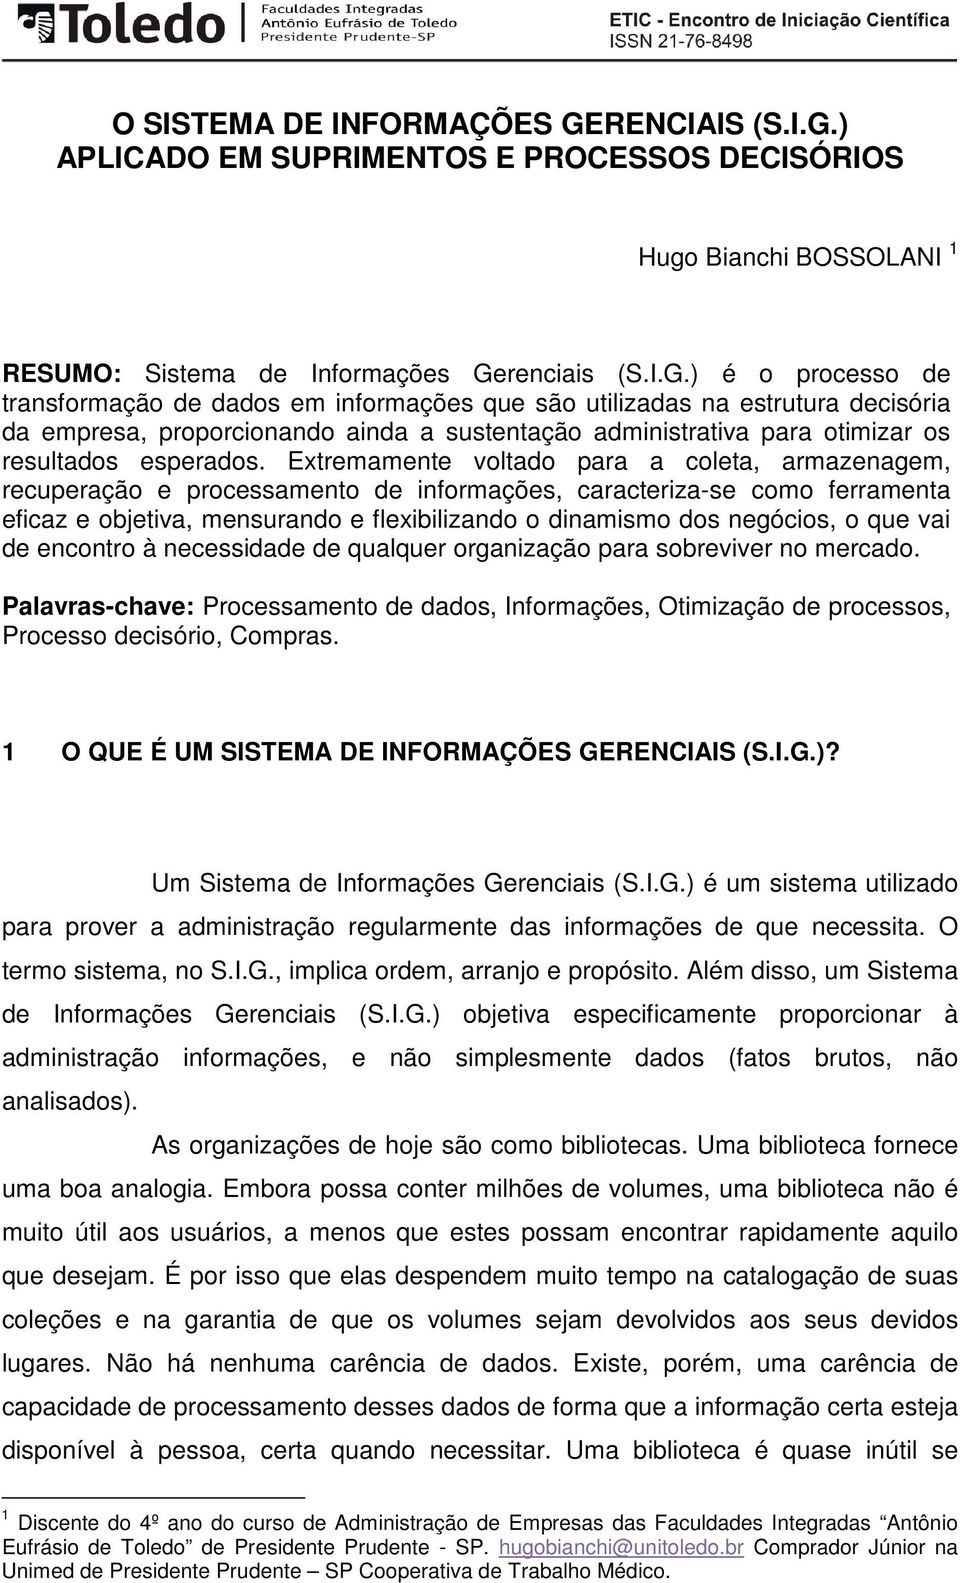 ) APLICADO EM SUPRIMENTOS E PROCESSOS DECISÓRIOS Hugo Bianchi BOSSOLANI 1 RESUMO: Sistema de Informações Ge